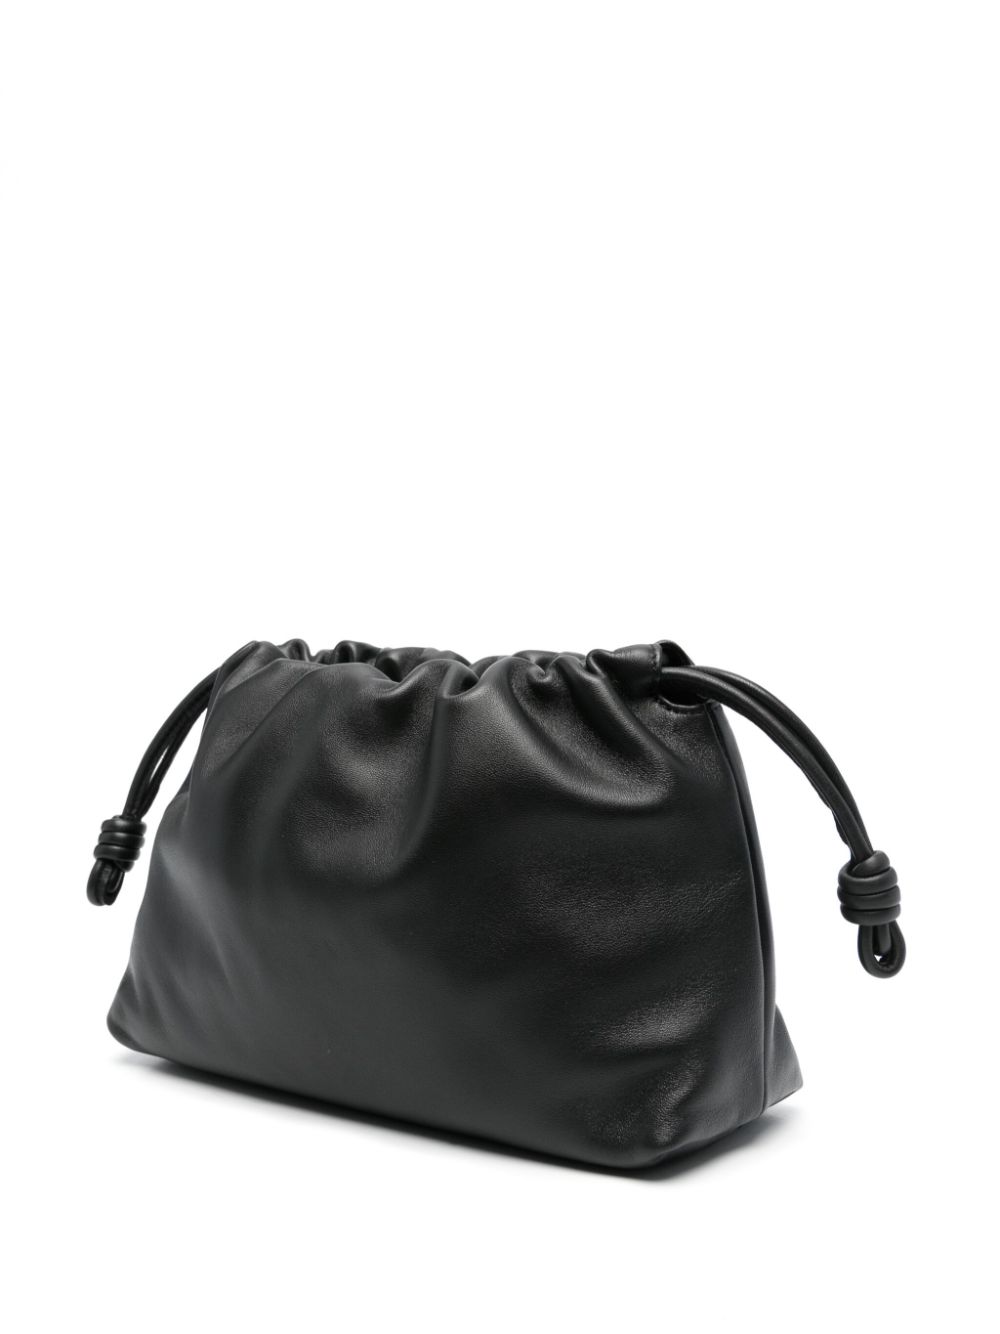 Loewe LOEWE- Flamenco Leather Clutch Bag